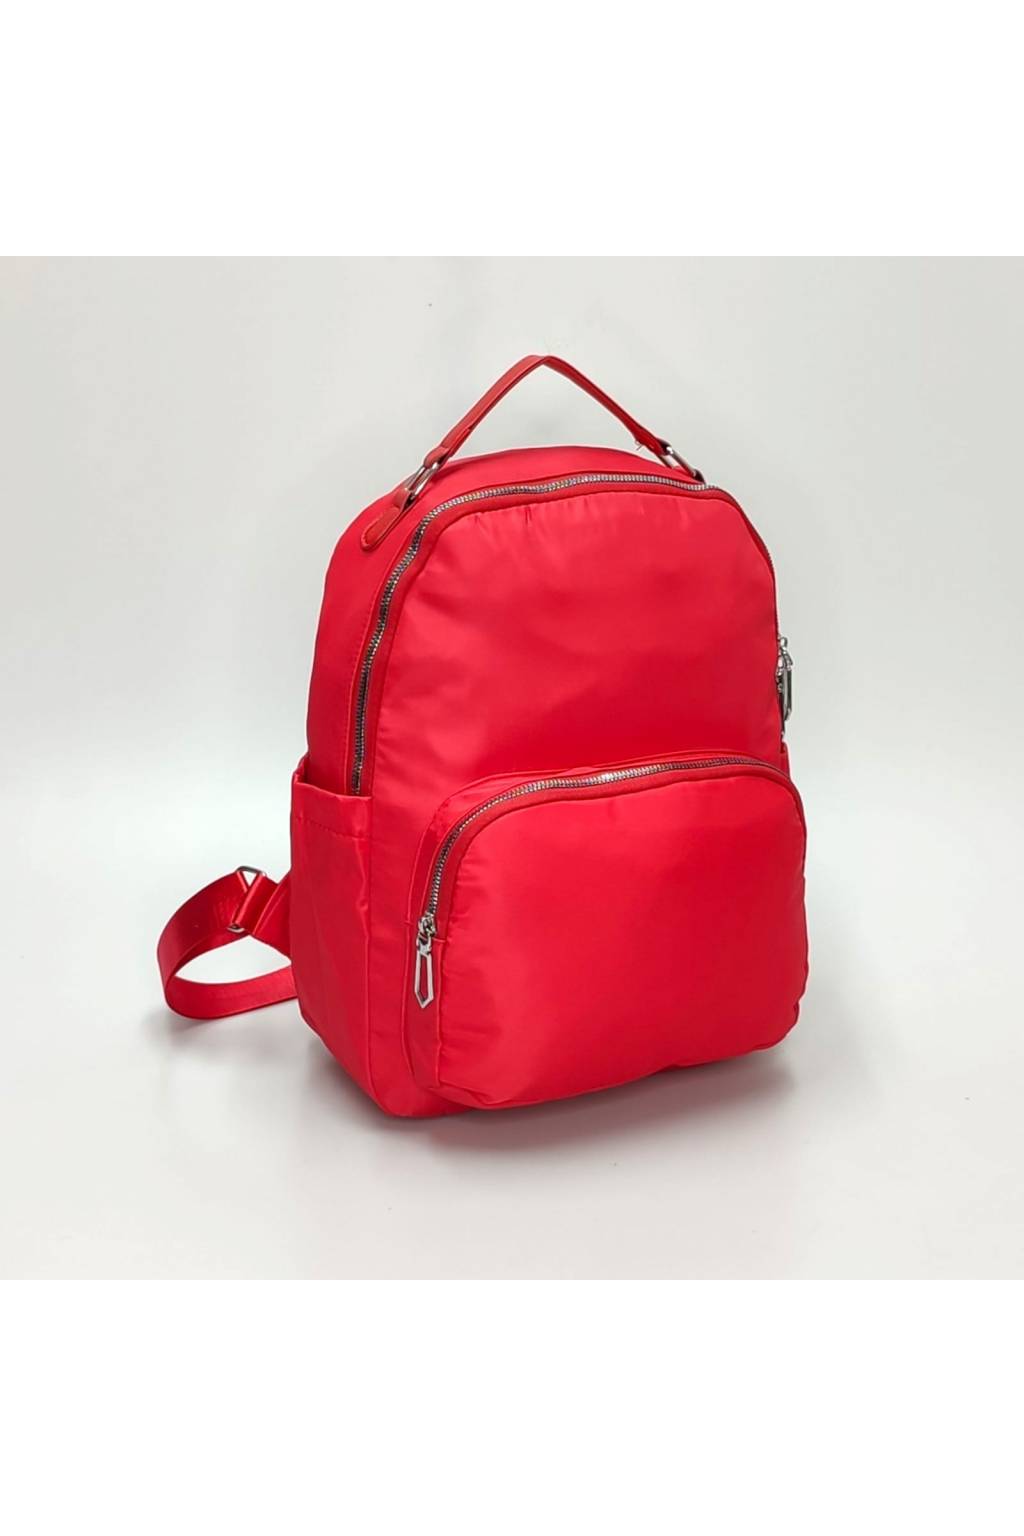 Dámsky ruksak B7235 červený www.kabelky vypredaj (3)